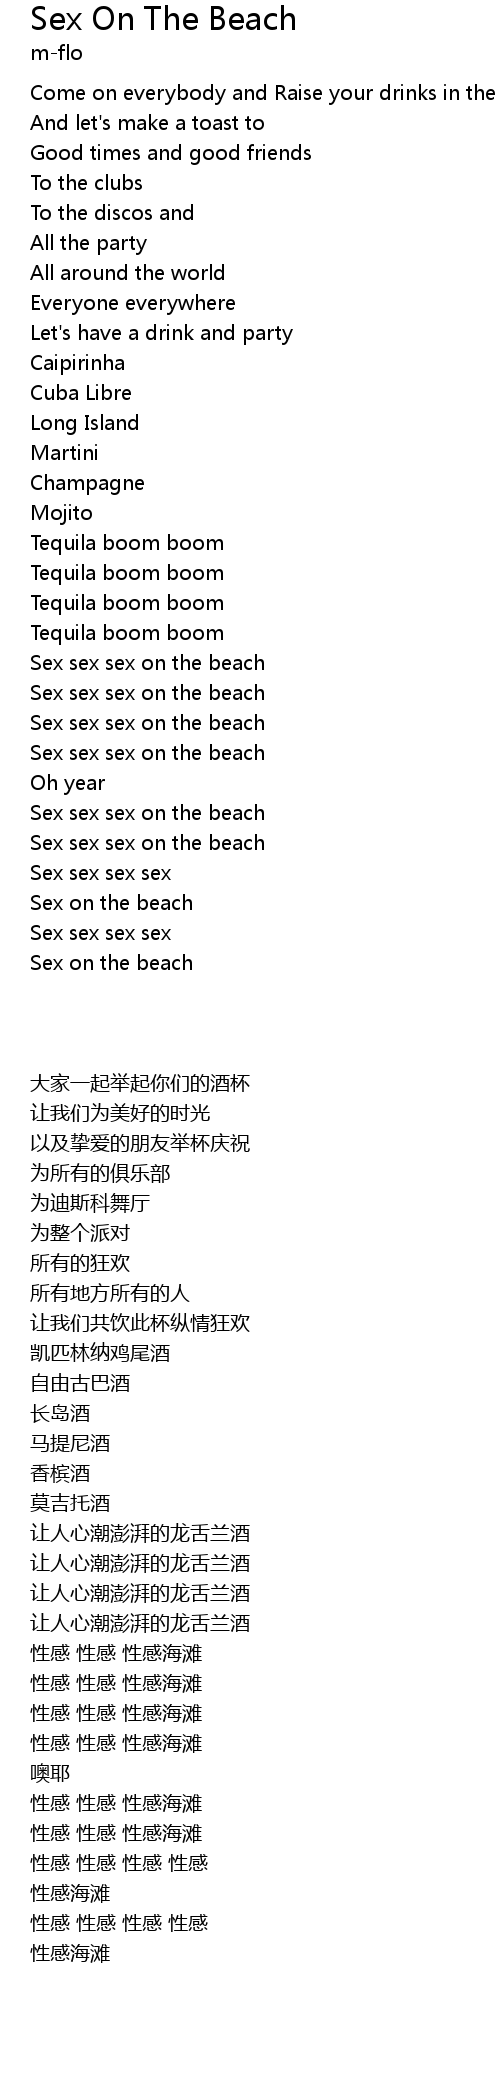 lyrics for sex on the beach